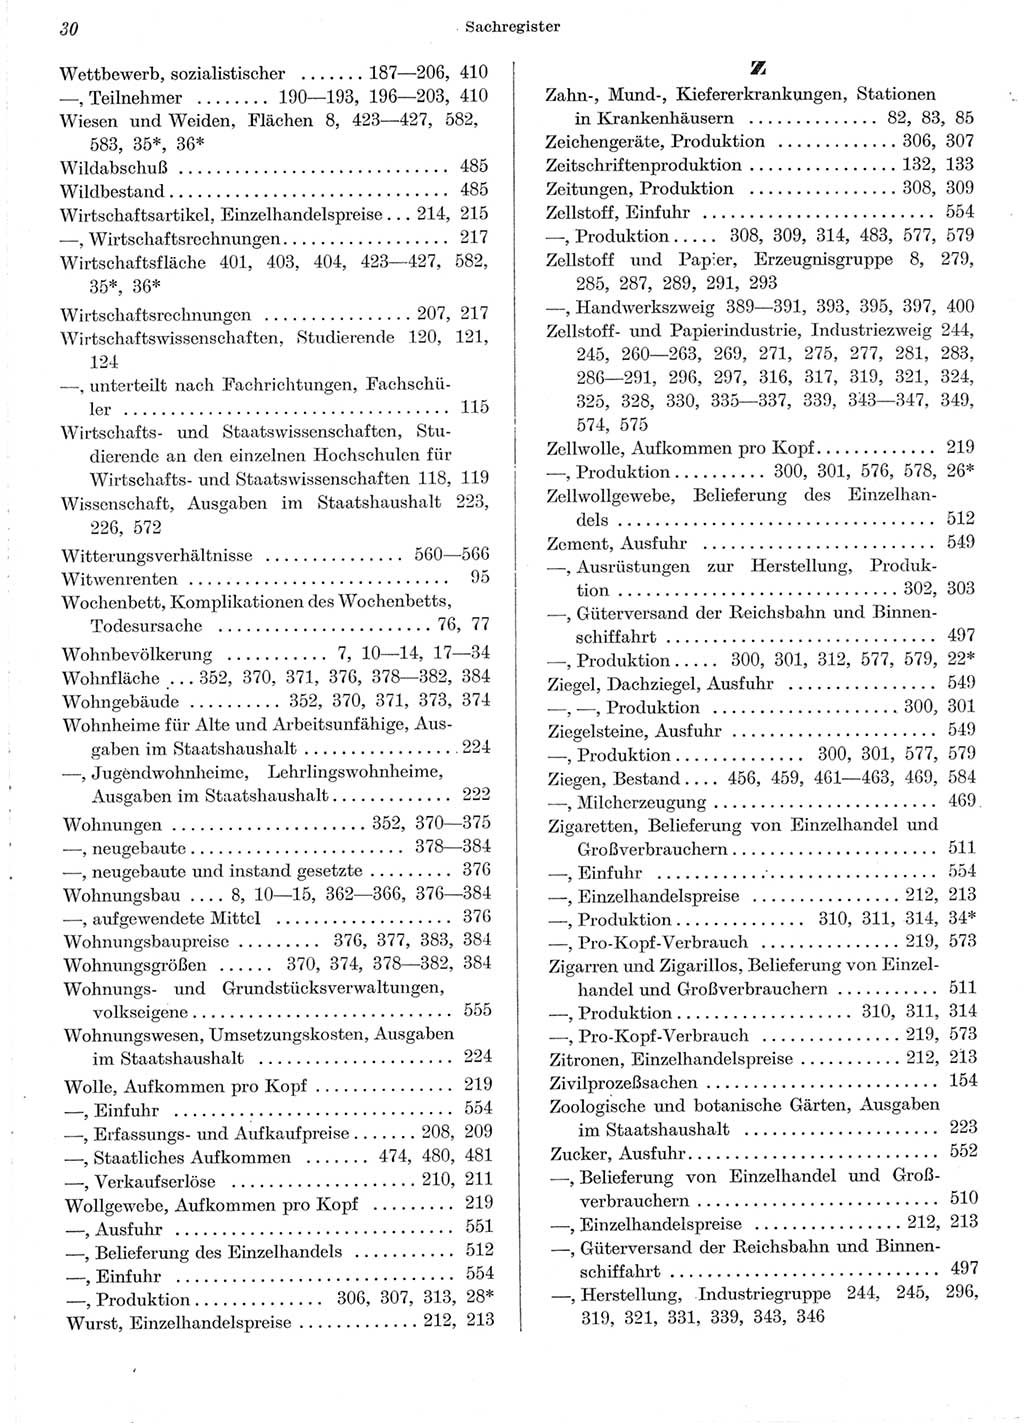 Statistisches Jahrbuch der Deutschen Demokratischen Republik (DDR) 1962, Seite 30 (Stat. Jb. DDR 1962, S. 30)